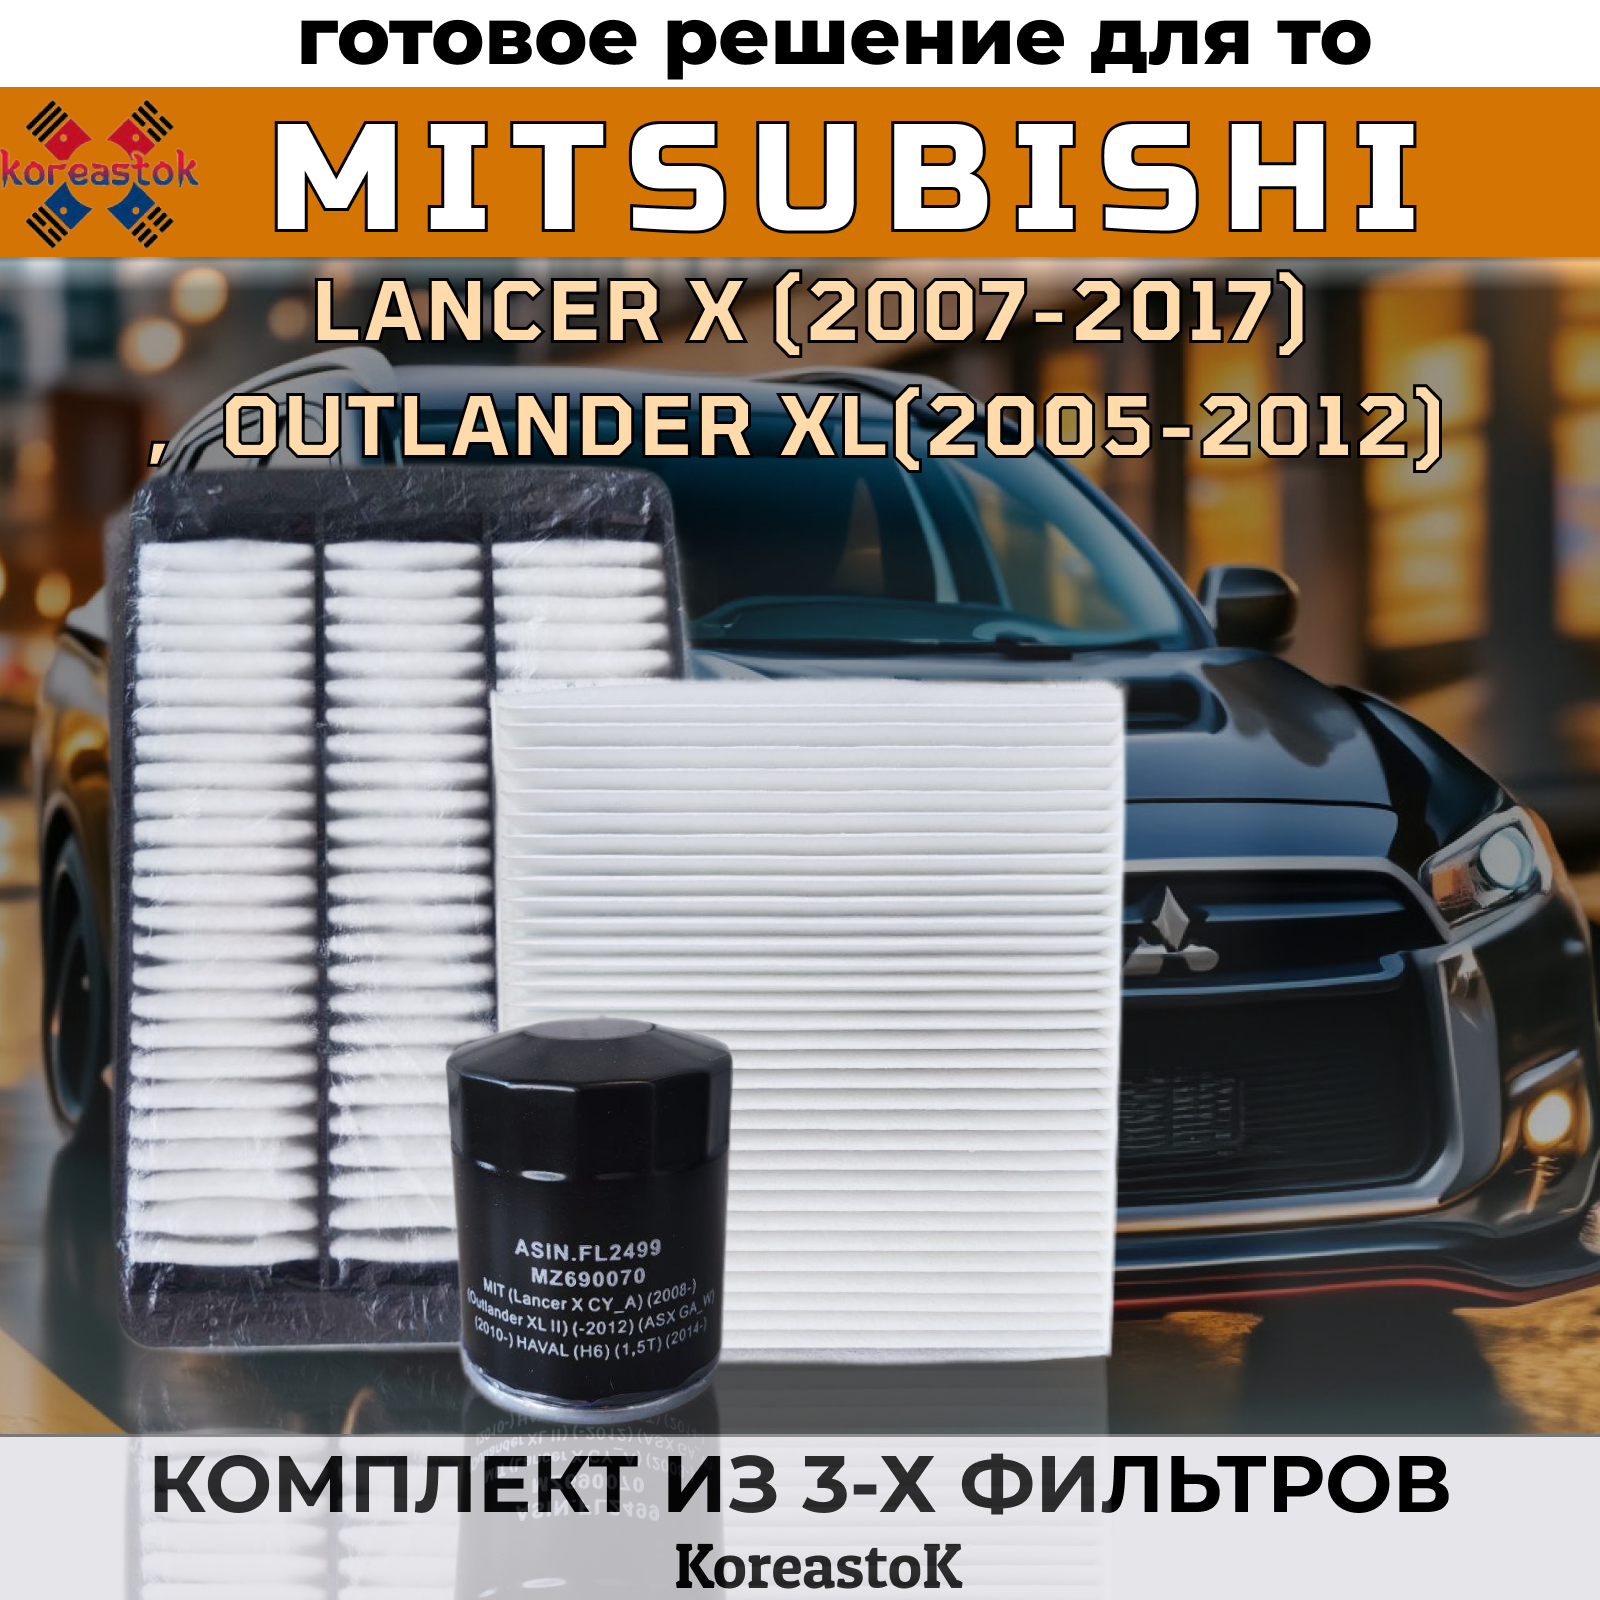 Фильтр масляный двигателя + воздушный и салонный KOREASTOK для Mitsubishi Lancer,Outlander